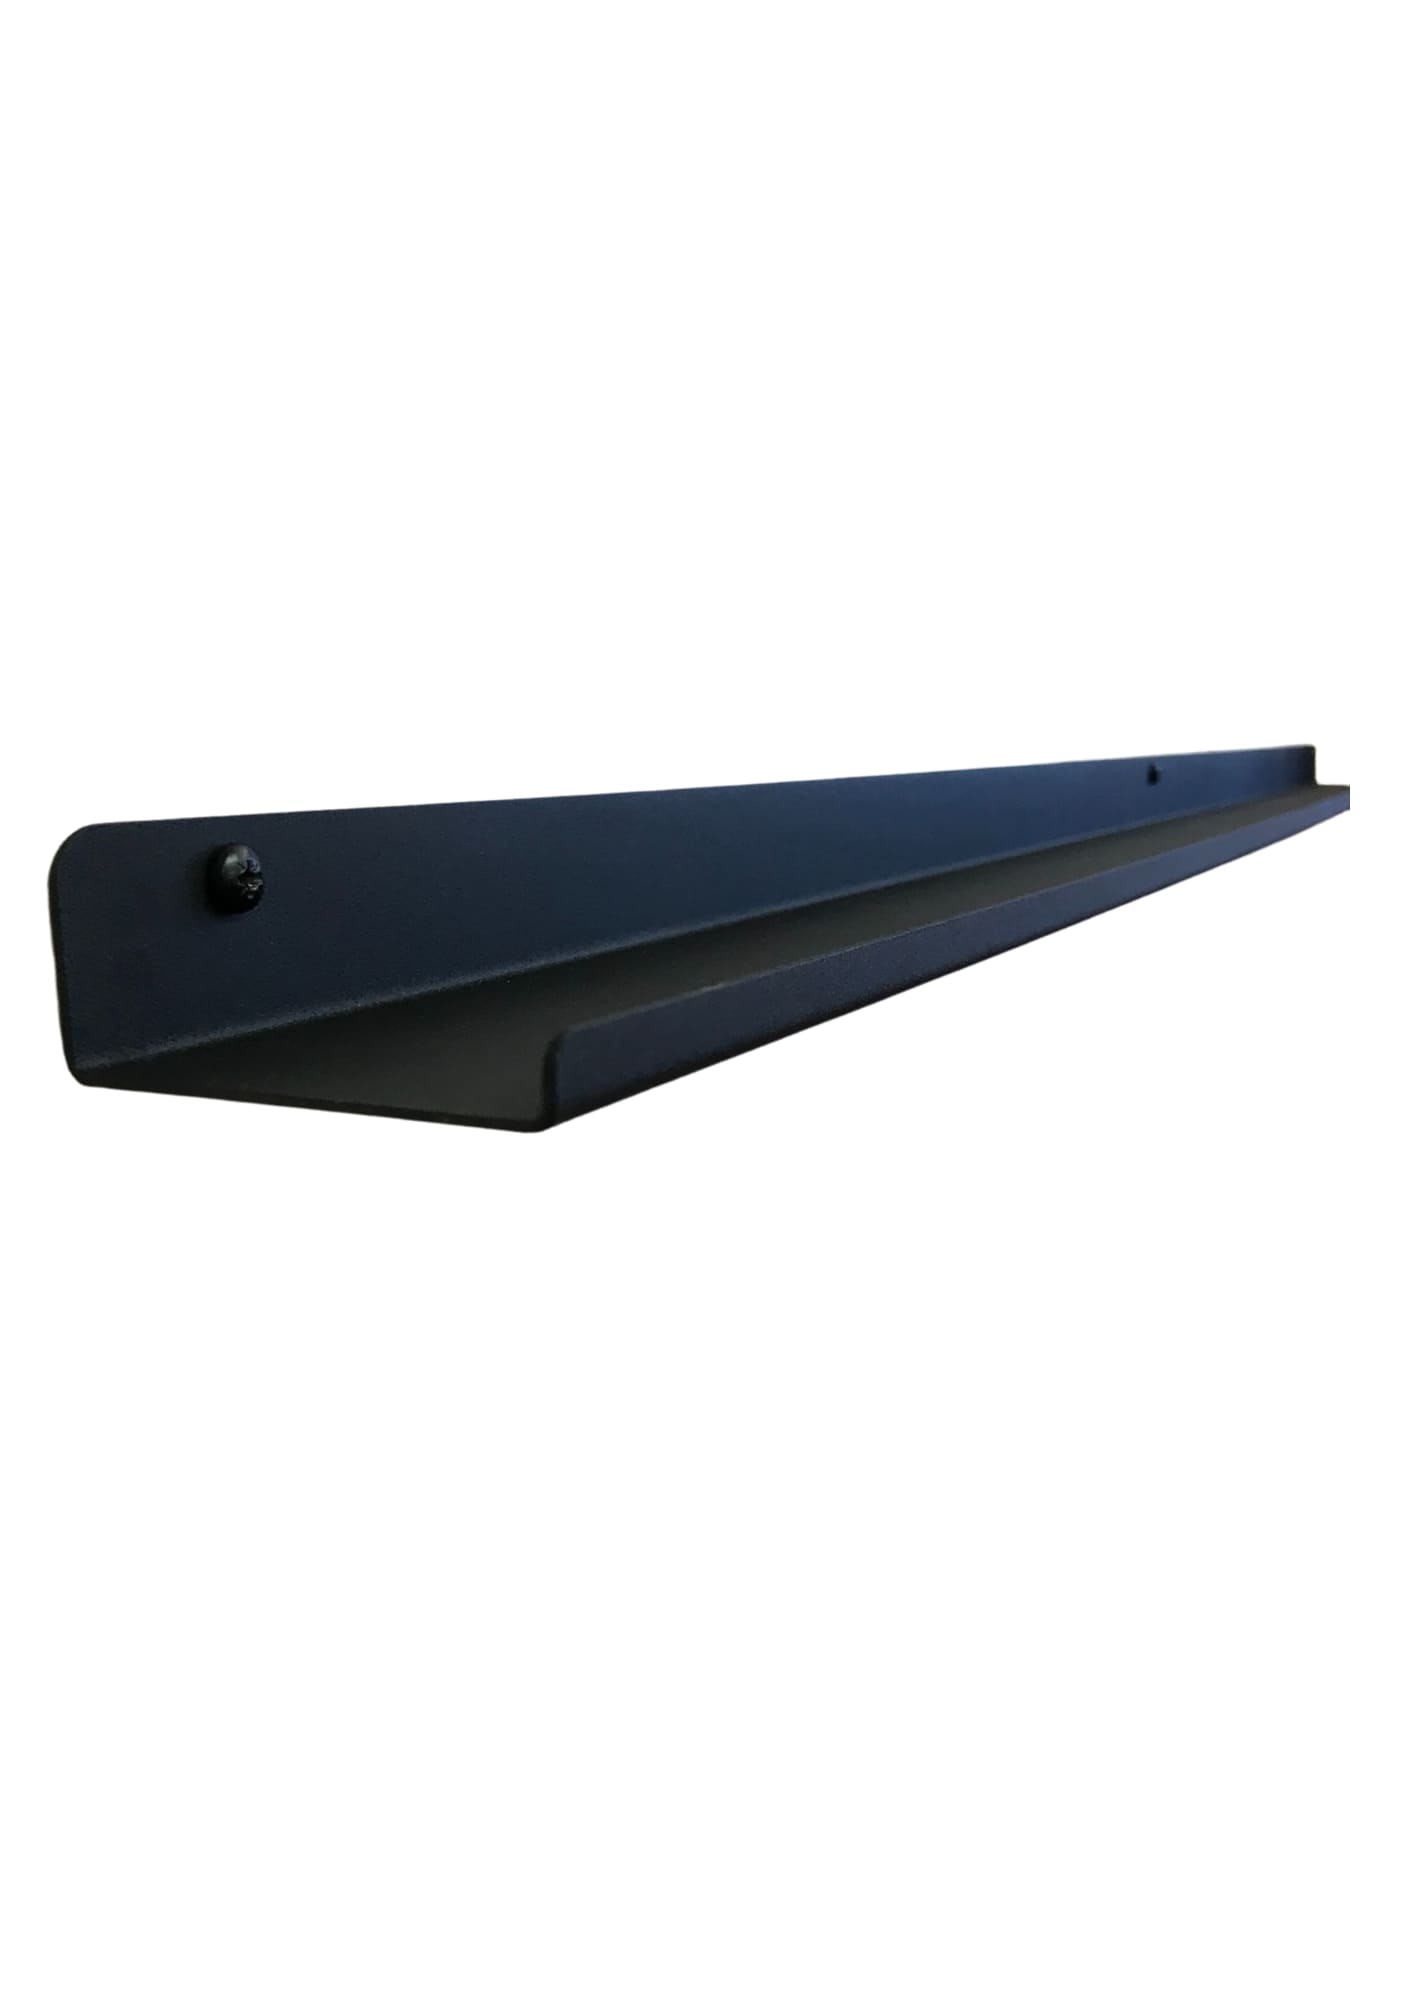 Steeling Floating Shelf - 60cm x 11 cm